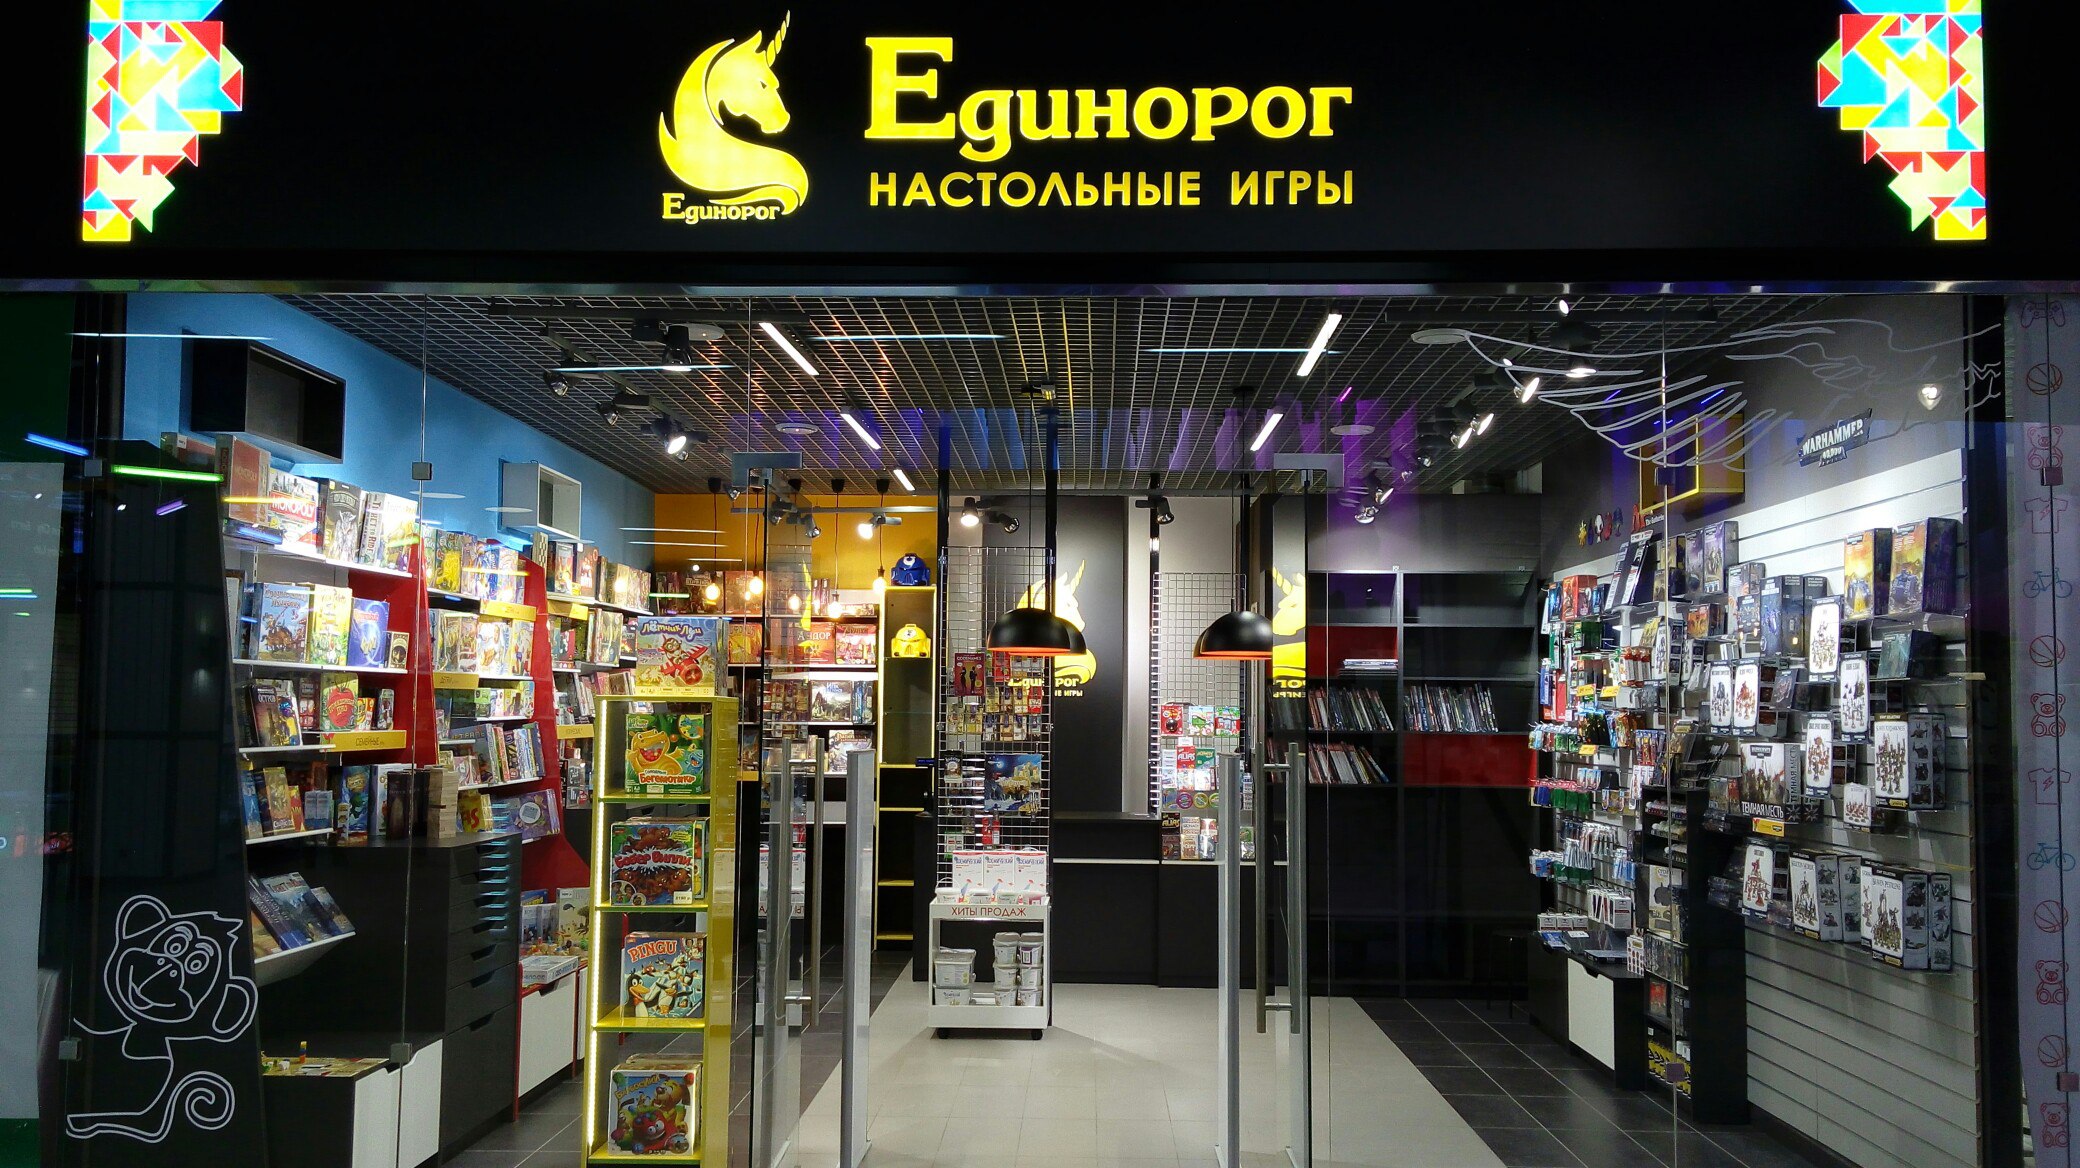 Магазин Нора Воронеж